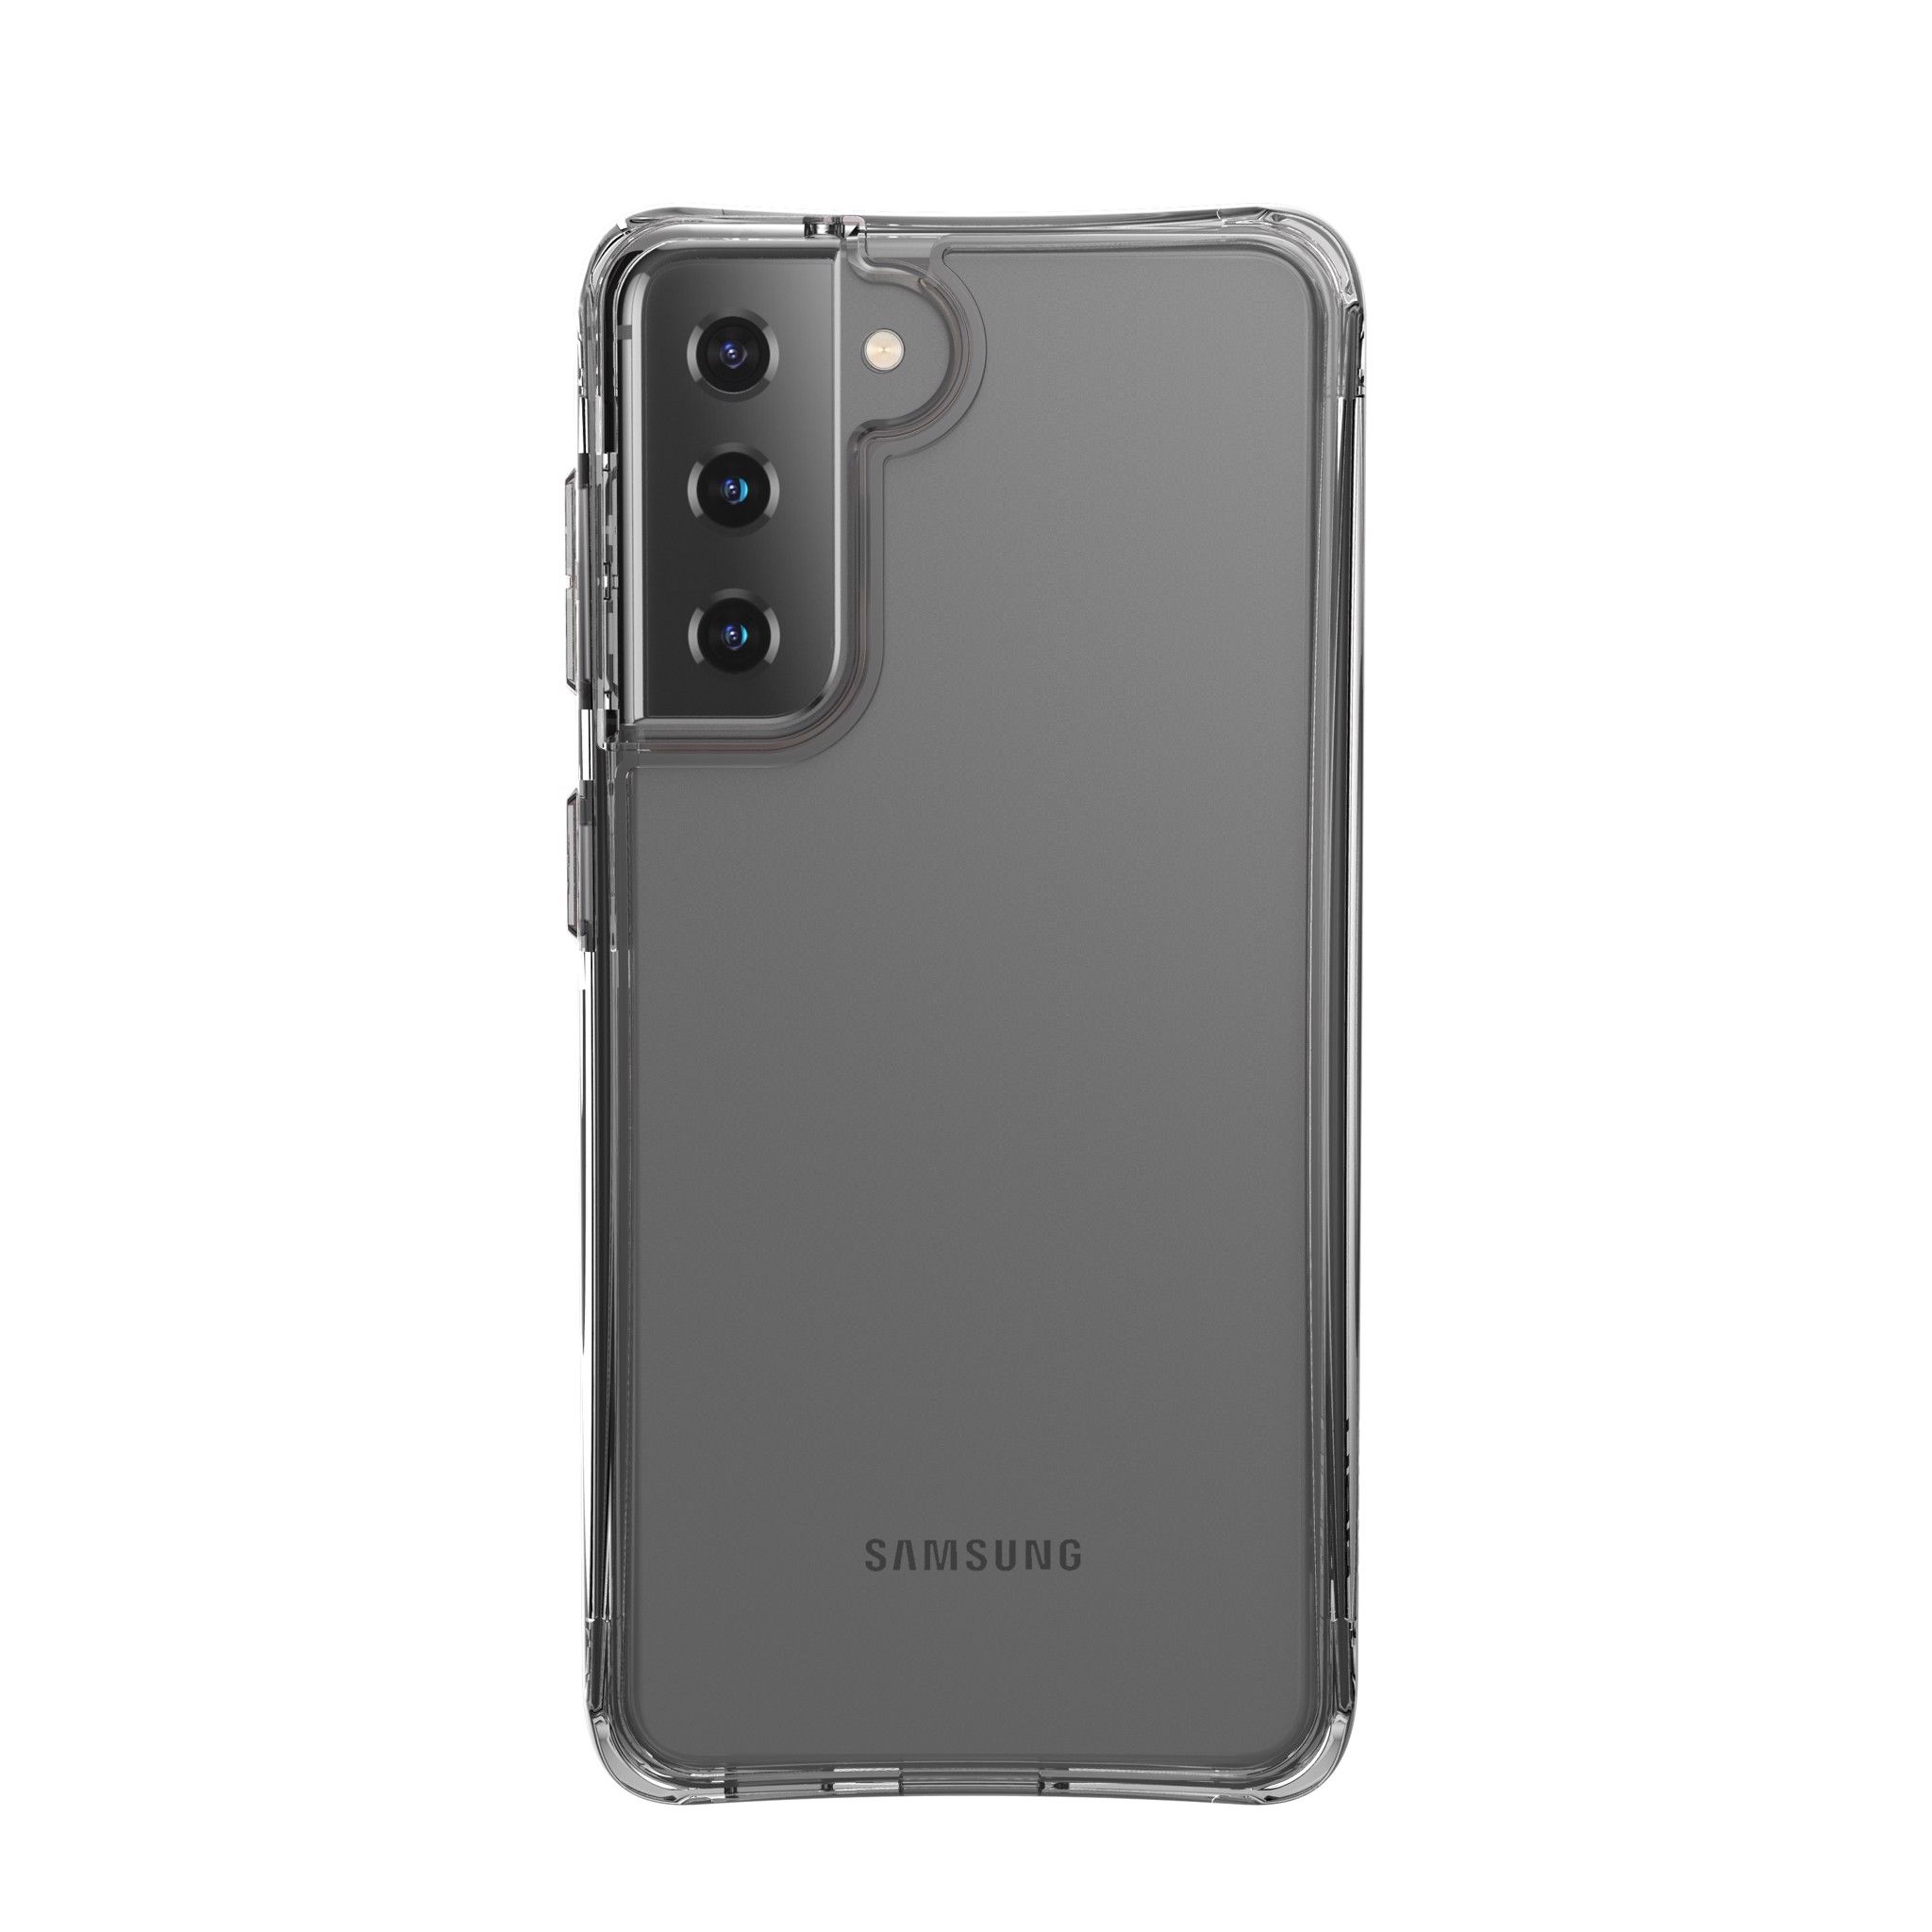  Ốp lưng Plyo cho Samsung Galaxy S21/S21 5G [6.2-inch] 